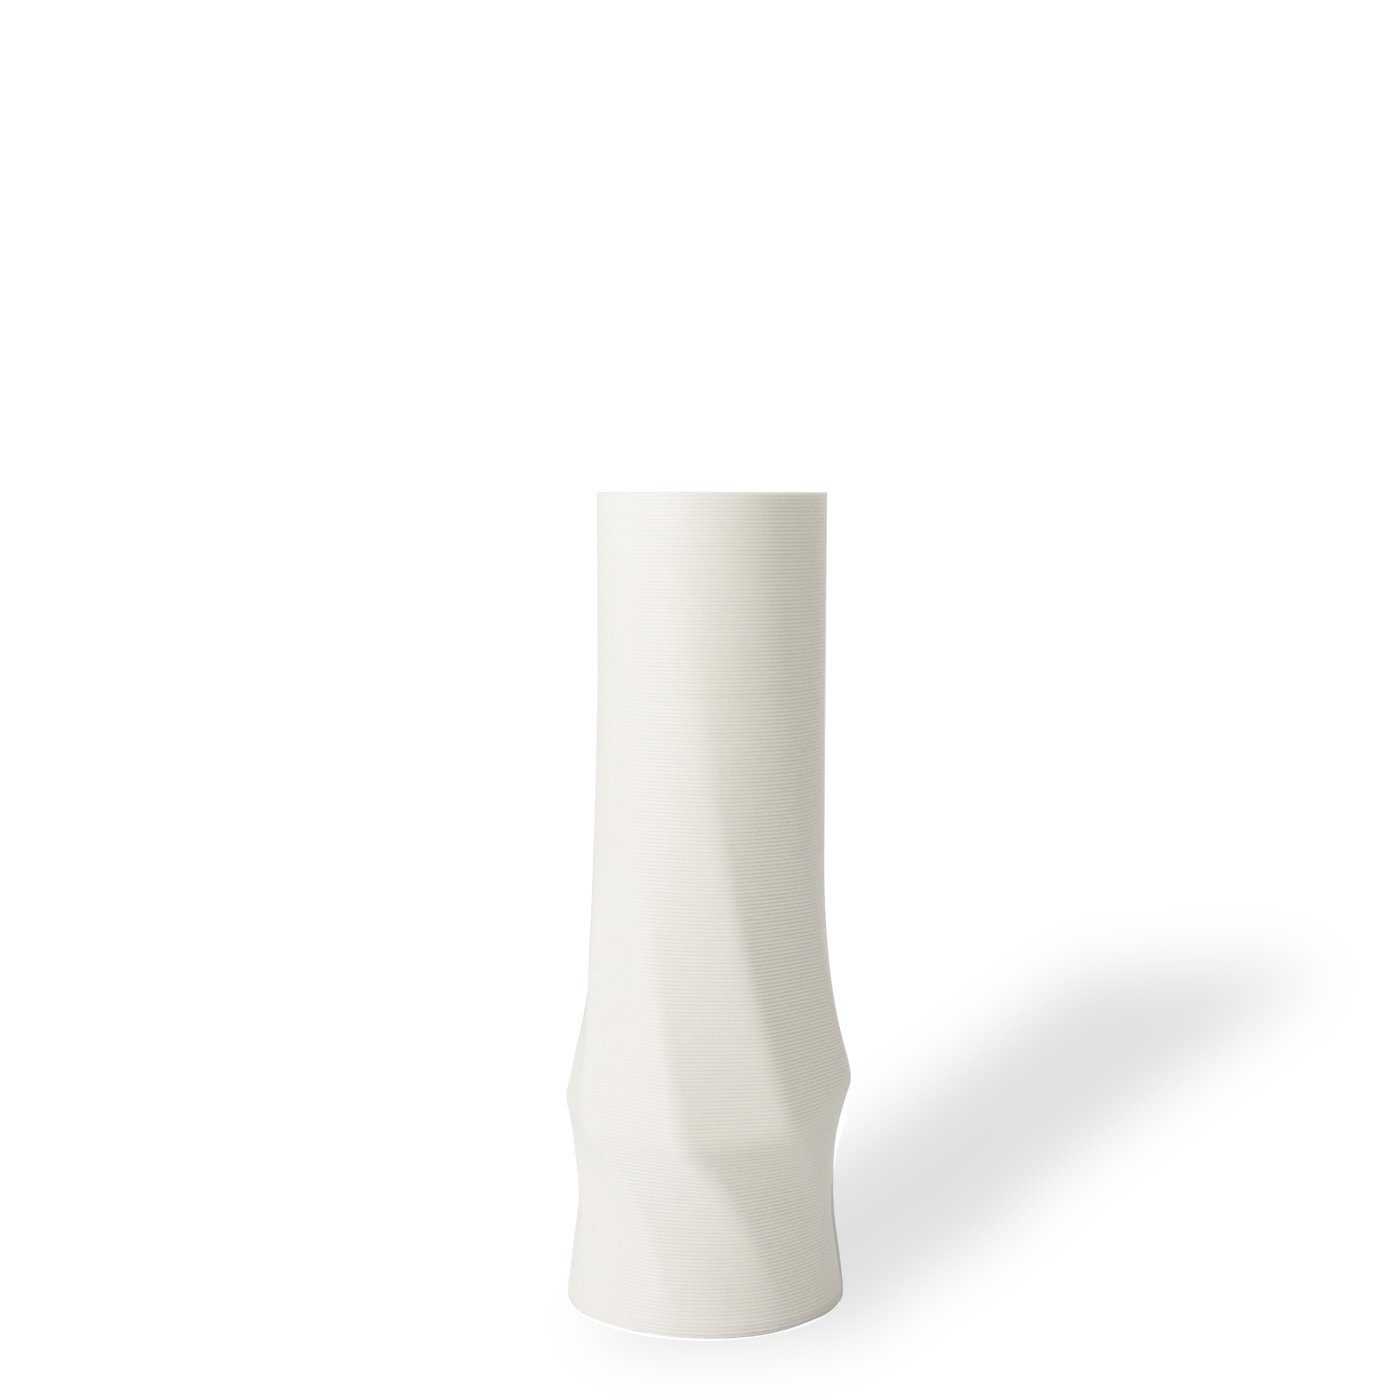 Shapes - Decorations Dekovase the vase - circle (basic), 3D Vasen, viele Farben, 100% 3D-Druck (Einzelmodell, 1 Vase), Wasserdicht; Leichte Struktur innerhalb des Materials (Rillung) Weiß